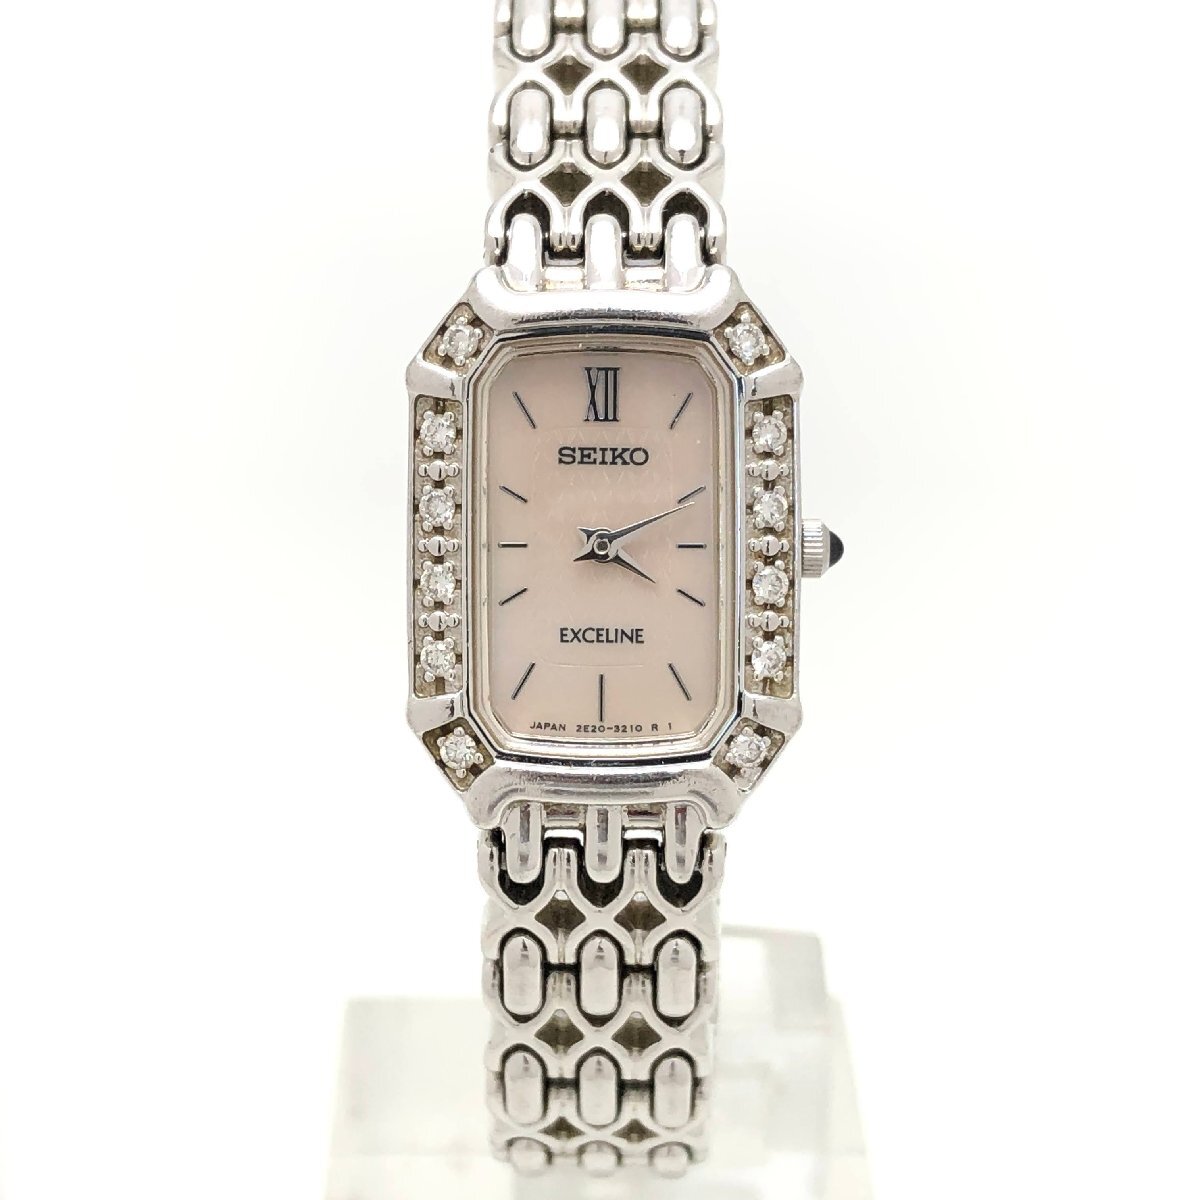  Seiko Exceline бриллиантовая оправа 2E20-7460 женские наручные часы розовый ракушка циферблат QZ SEIKO